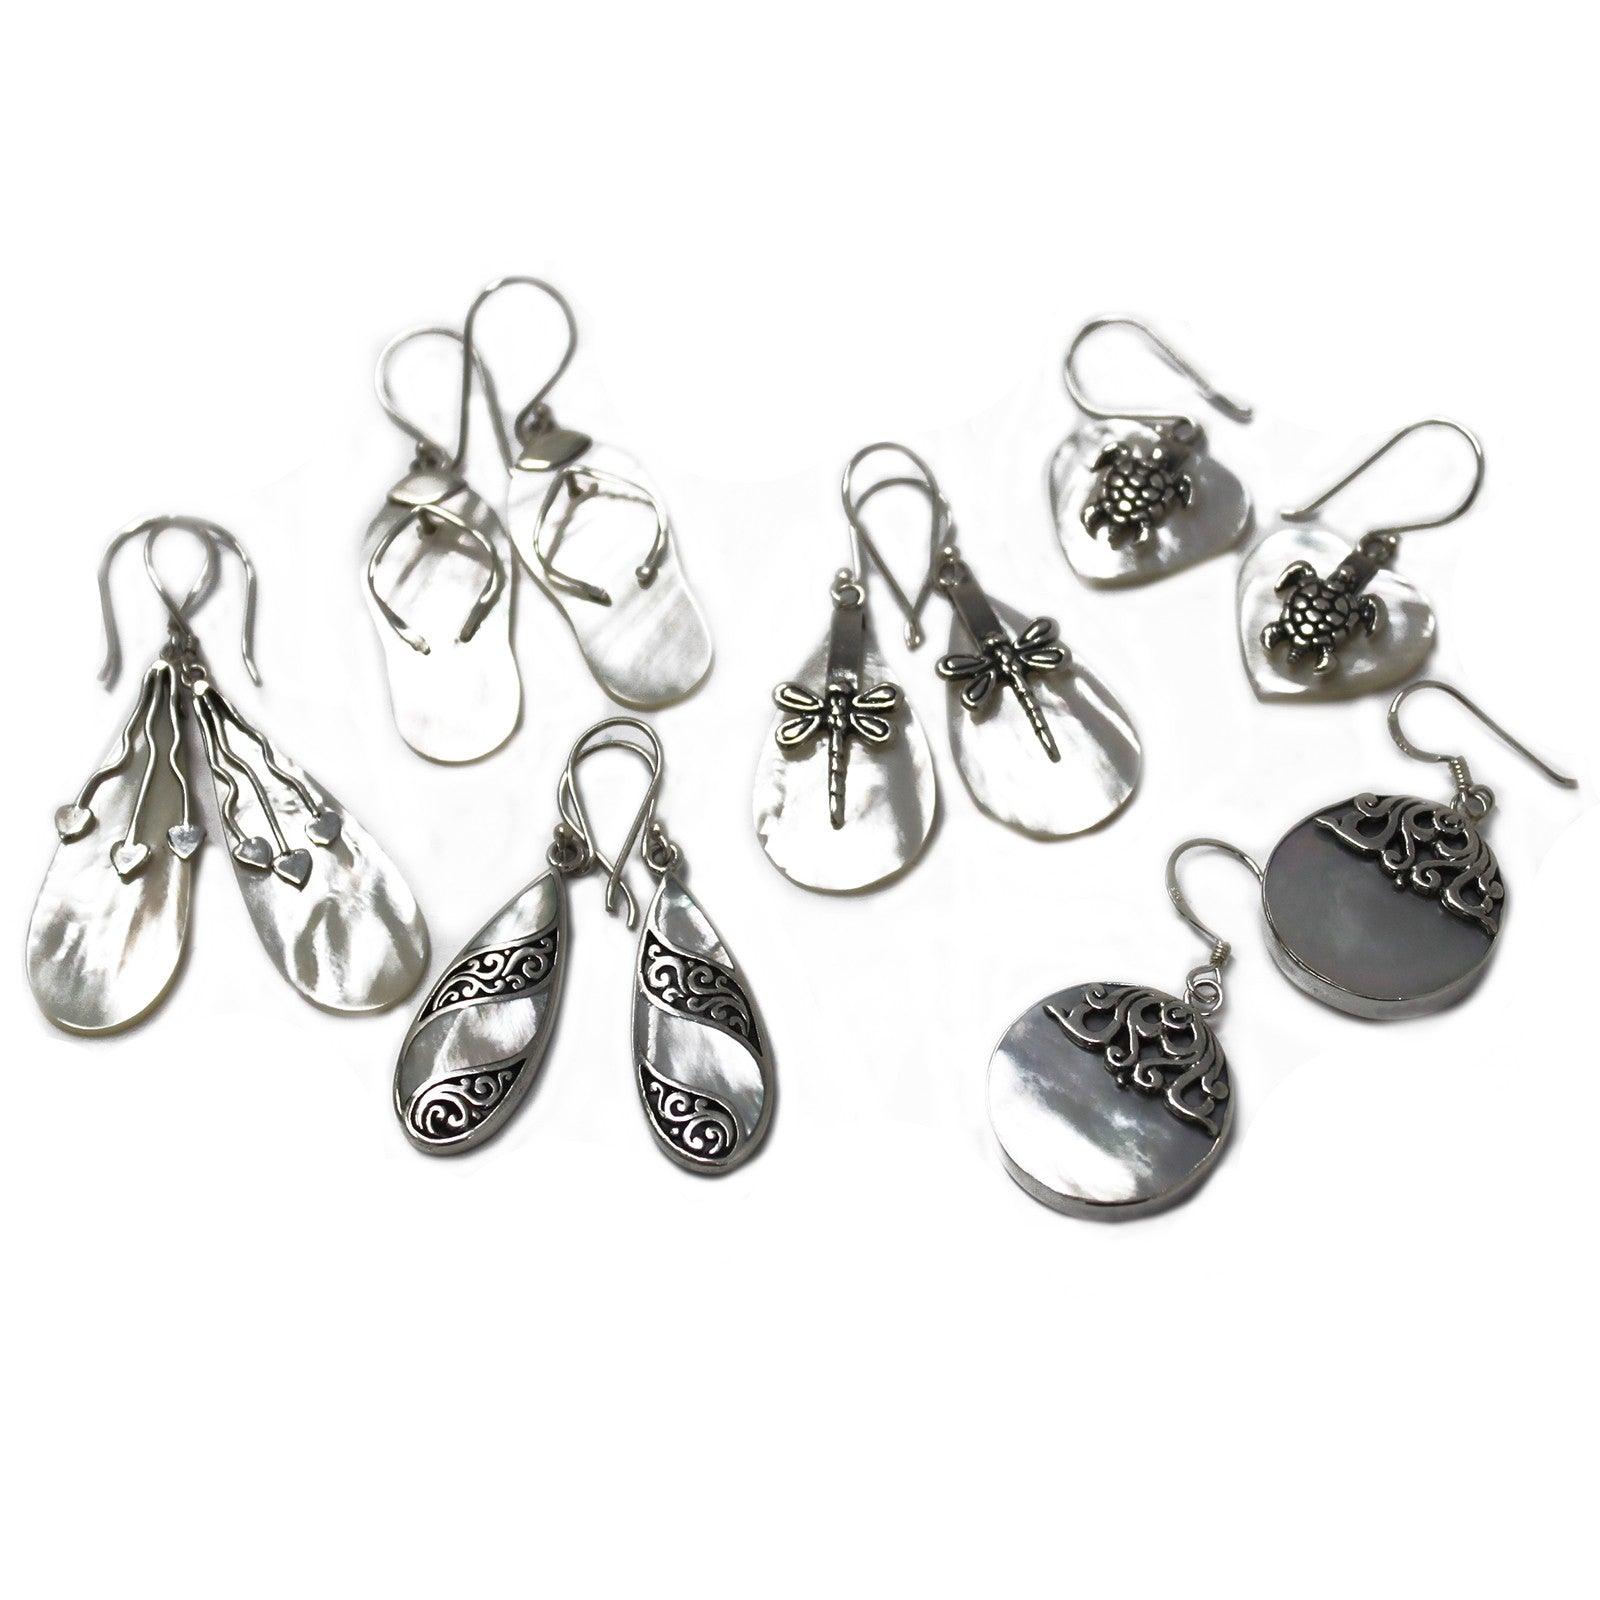 Shell & Silver Earrings - Flip-flops- MOP - DuvetDay.co.uk